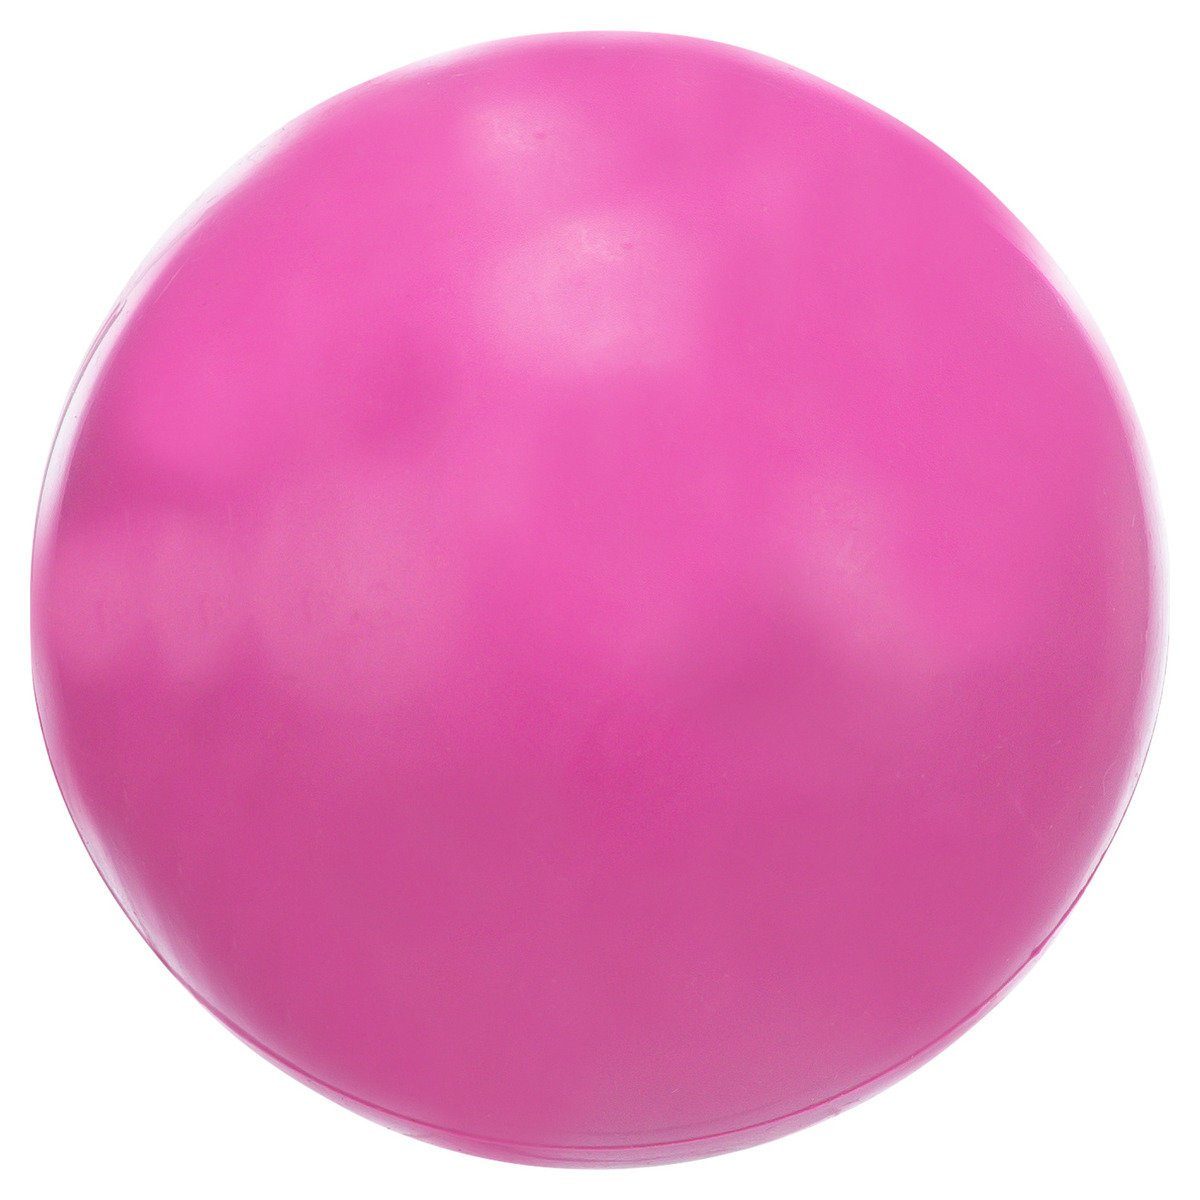 TRIXIE Spielknochen Hundespielzeug Ball, geräuschlos, Durchmesser: 7 cm / Farbe: pink